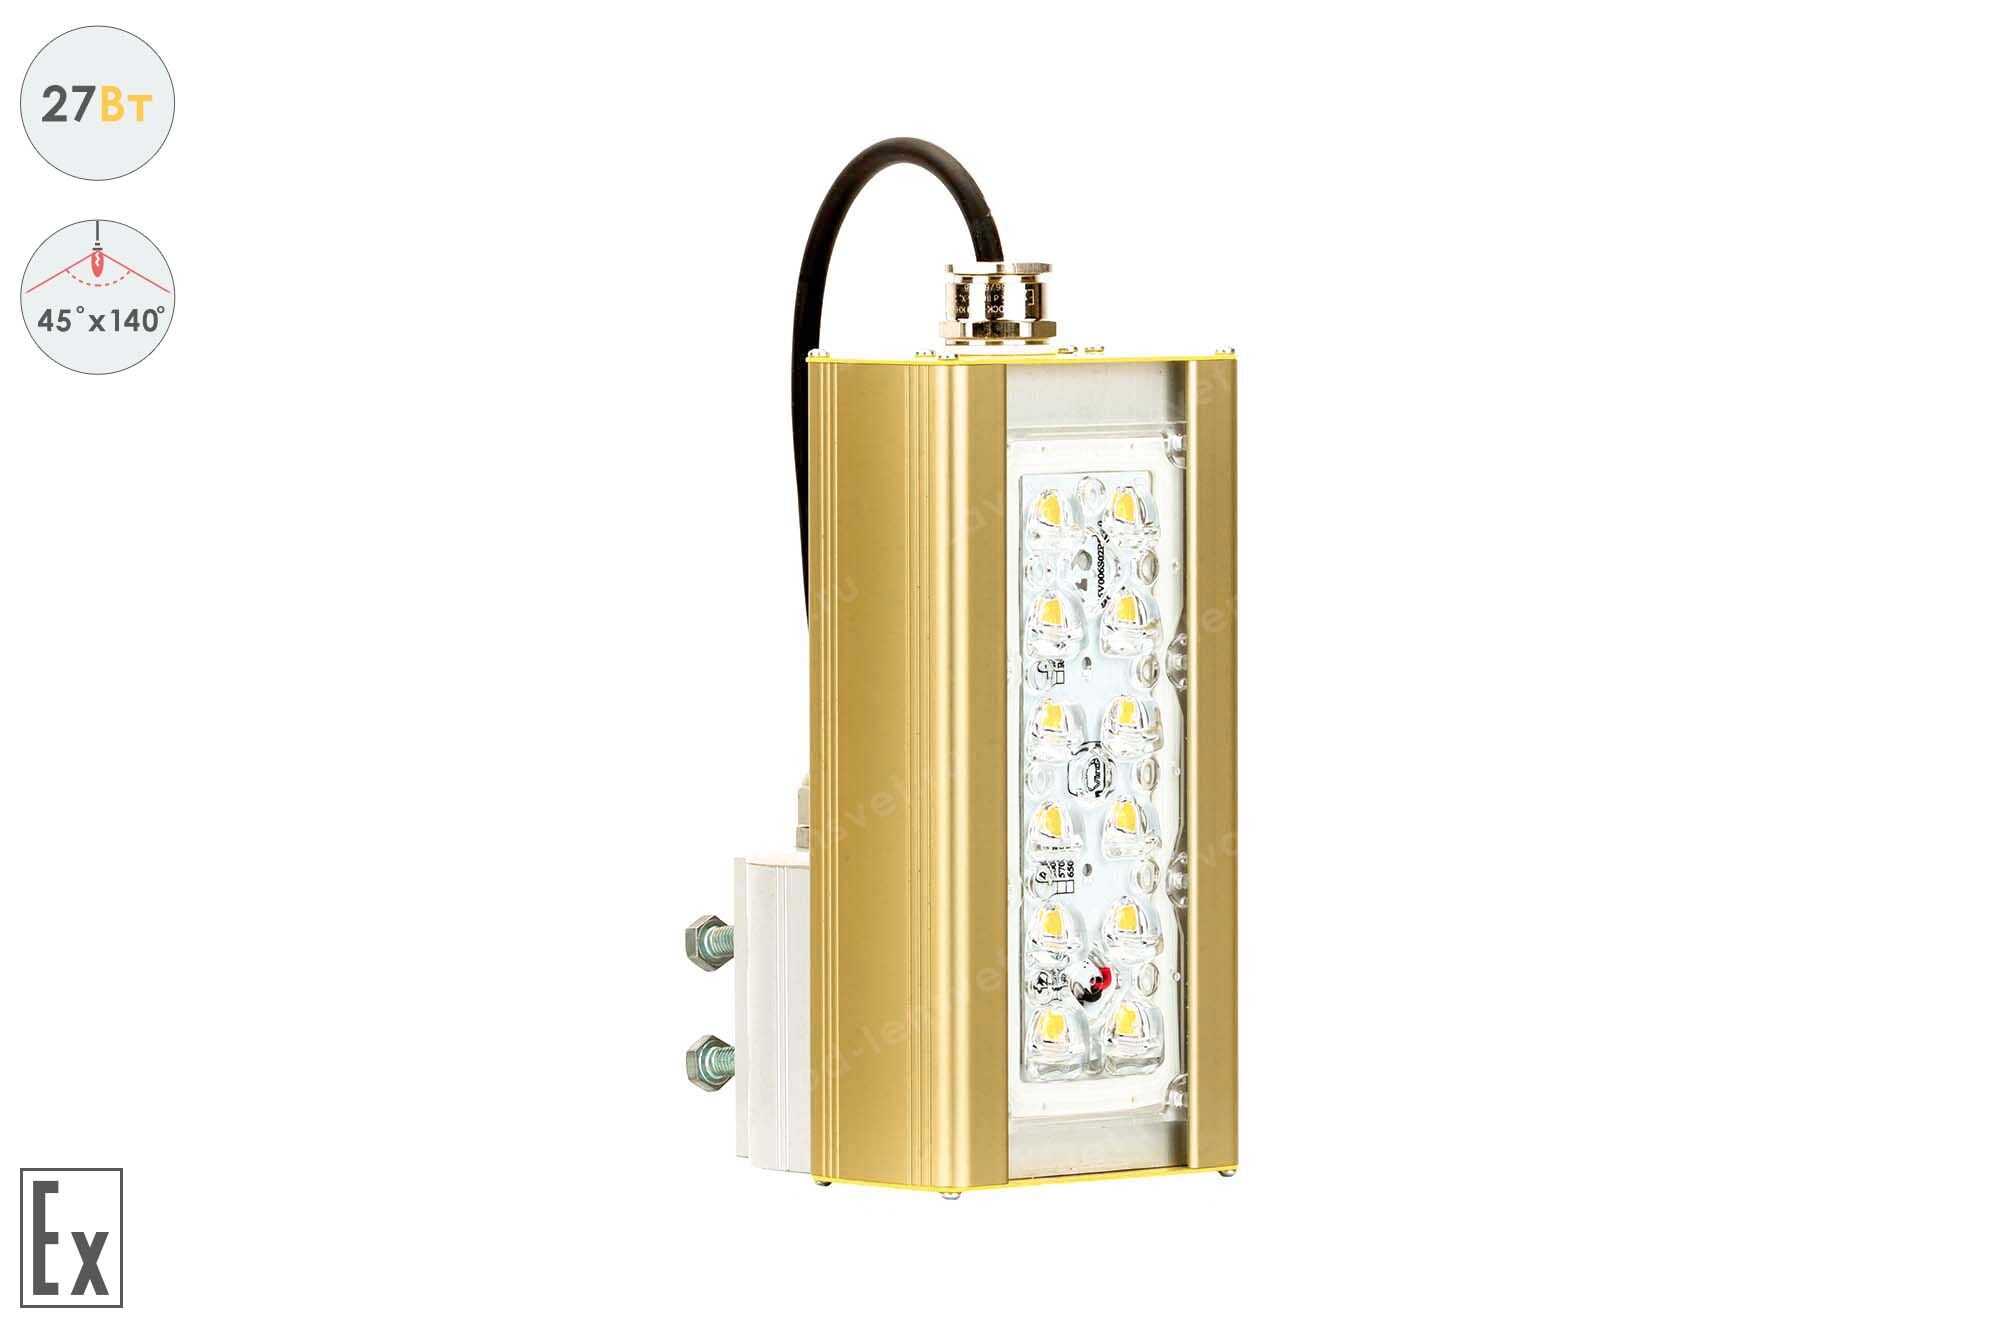 Светильник взрывозащищенный светодиодный Магистраль GOLD, консоль K-1, 27 Вт, 45X140°